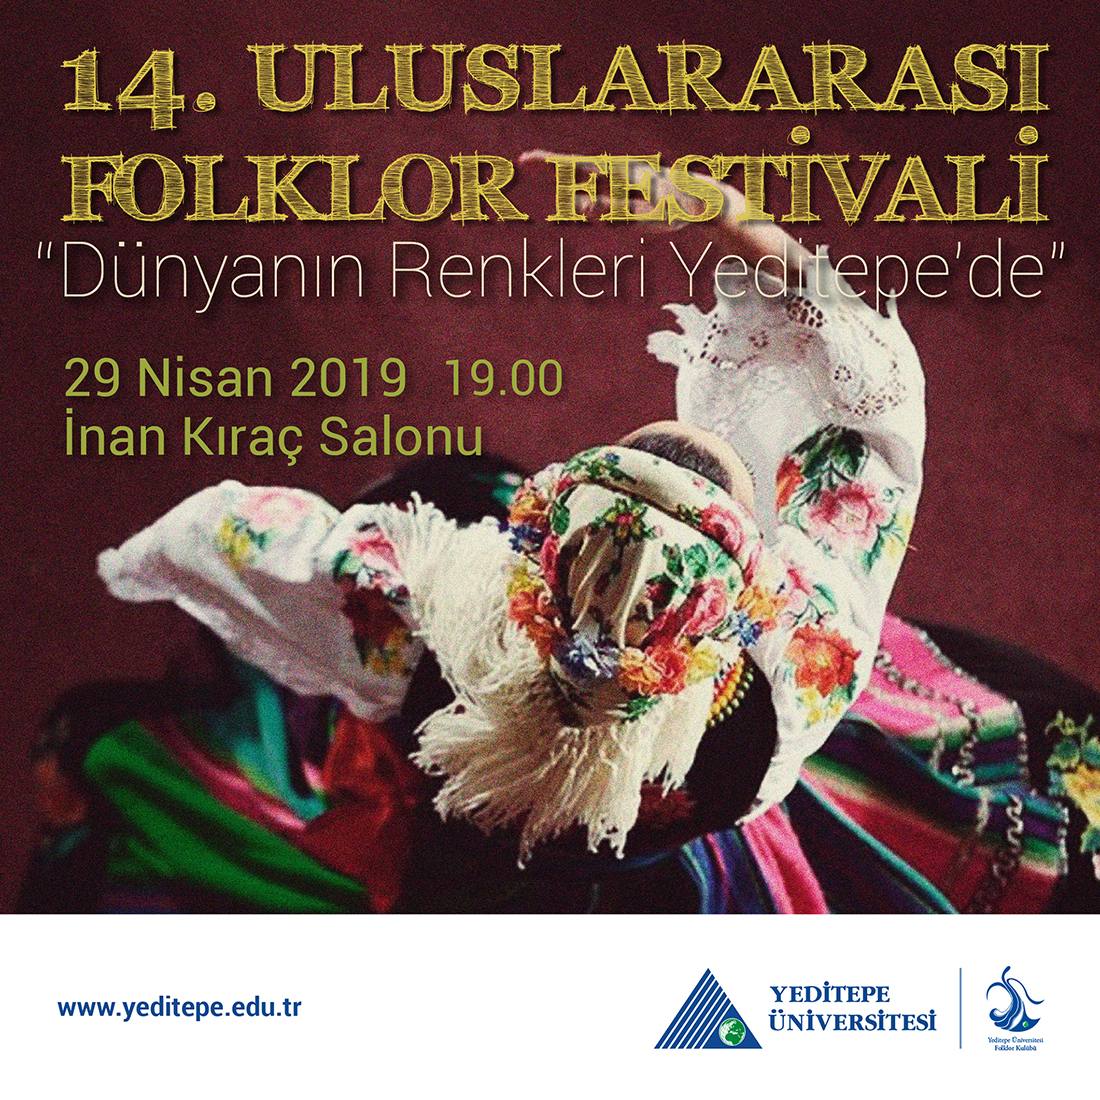 14. Uluslararası Folklor Festivali